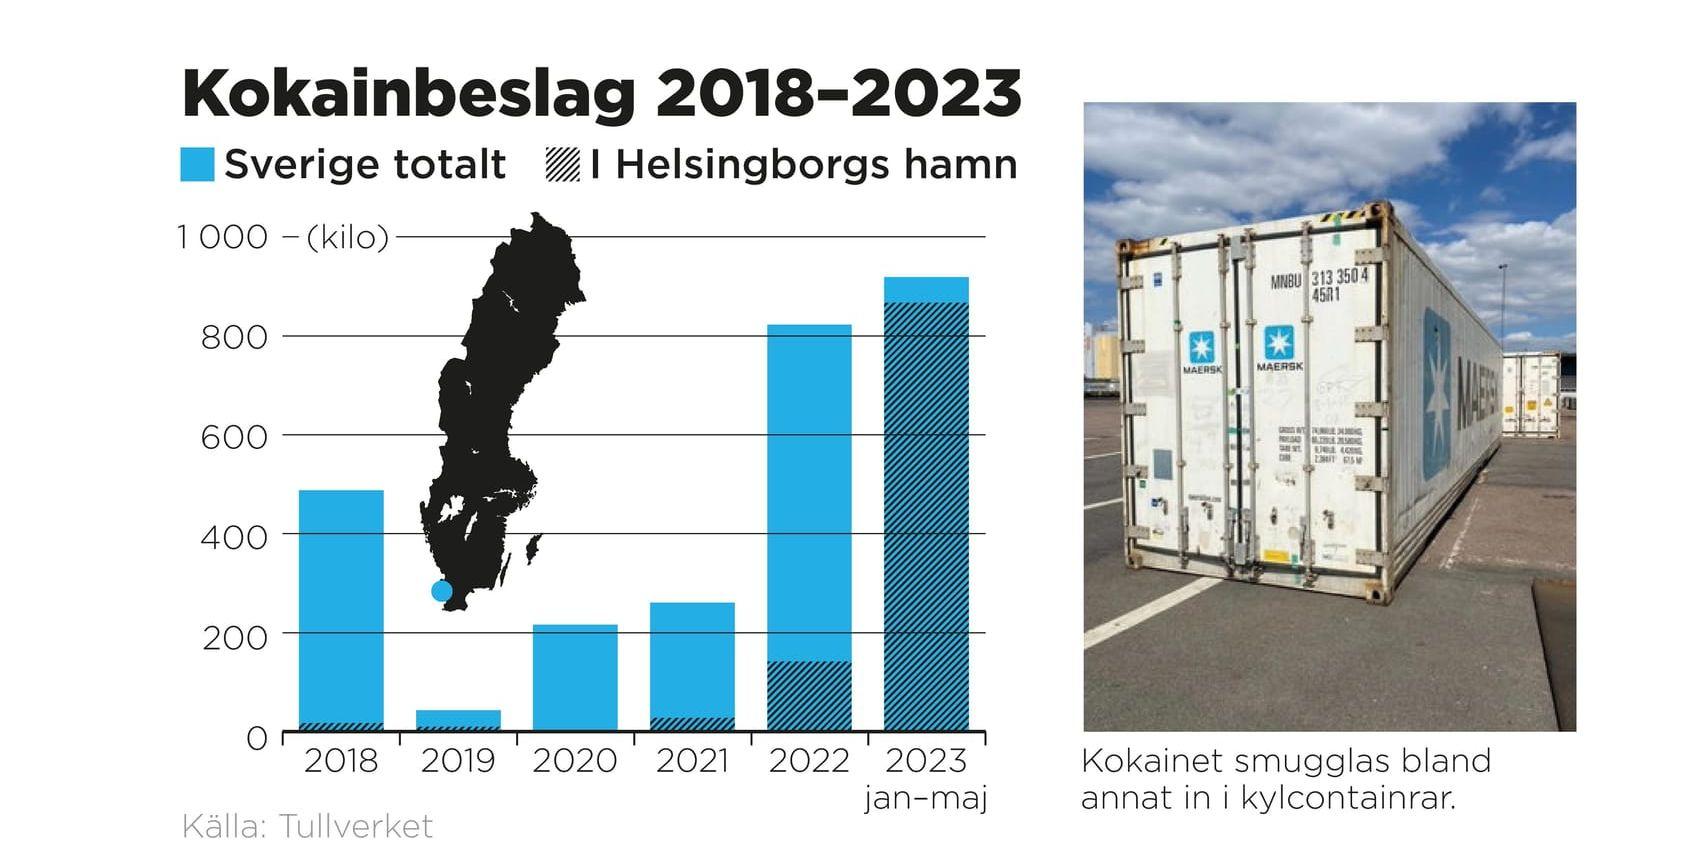 Kokainbeslag i Sverige och i Helsingborgs hamn.